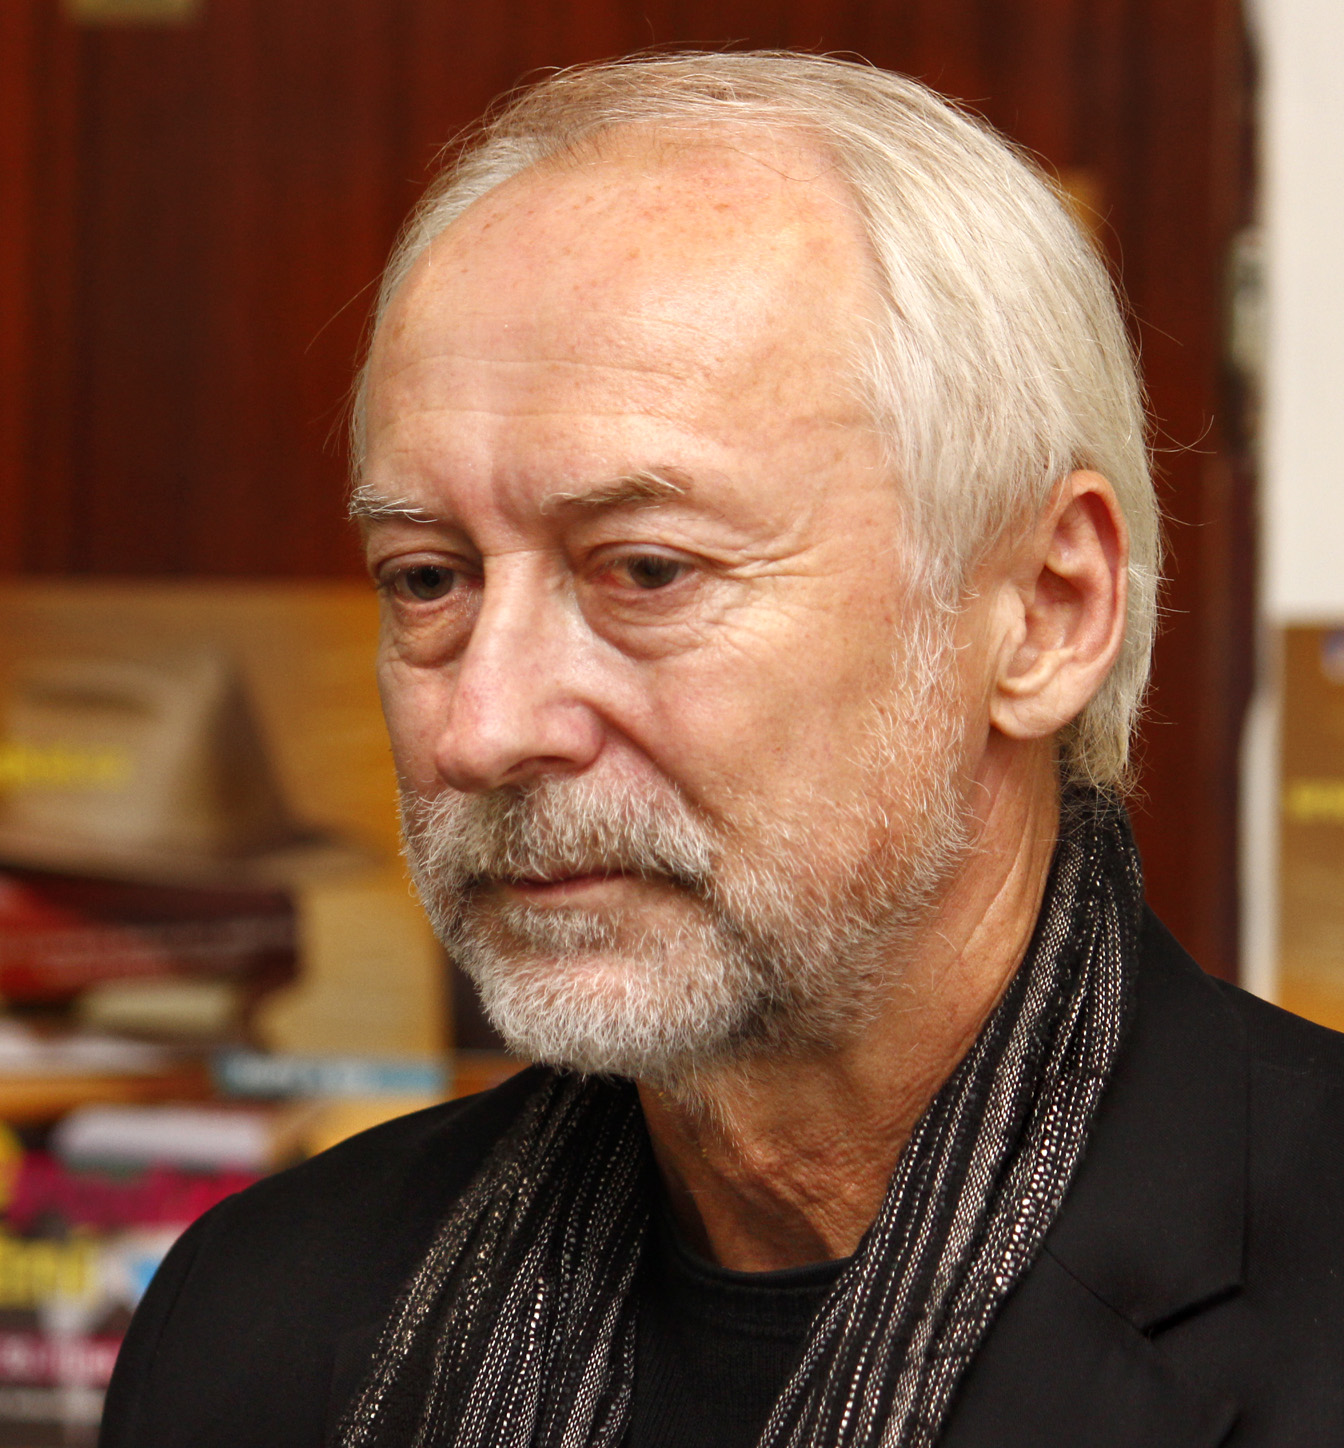 Jan Dungel in 2012 